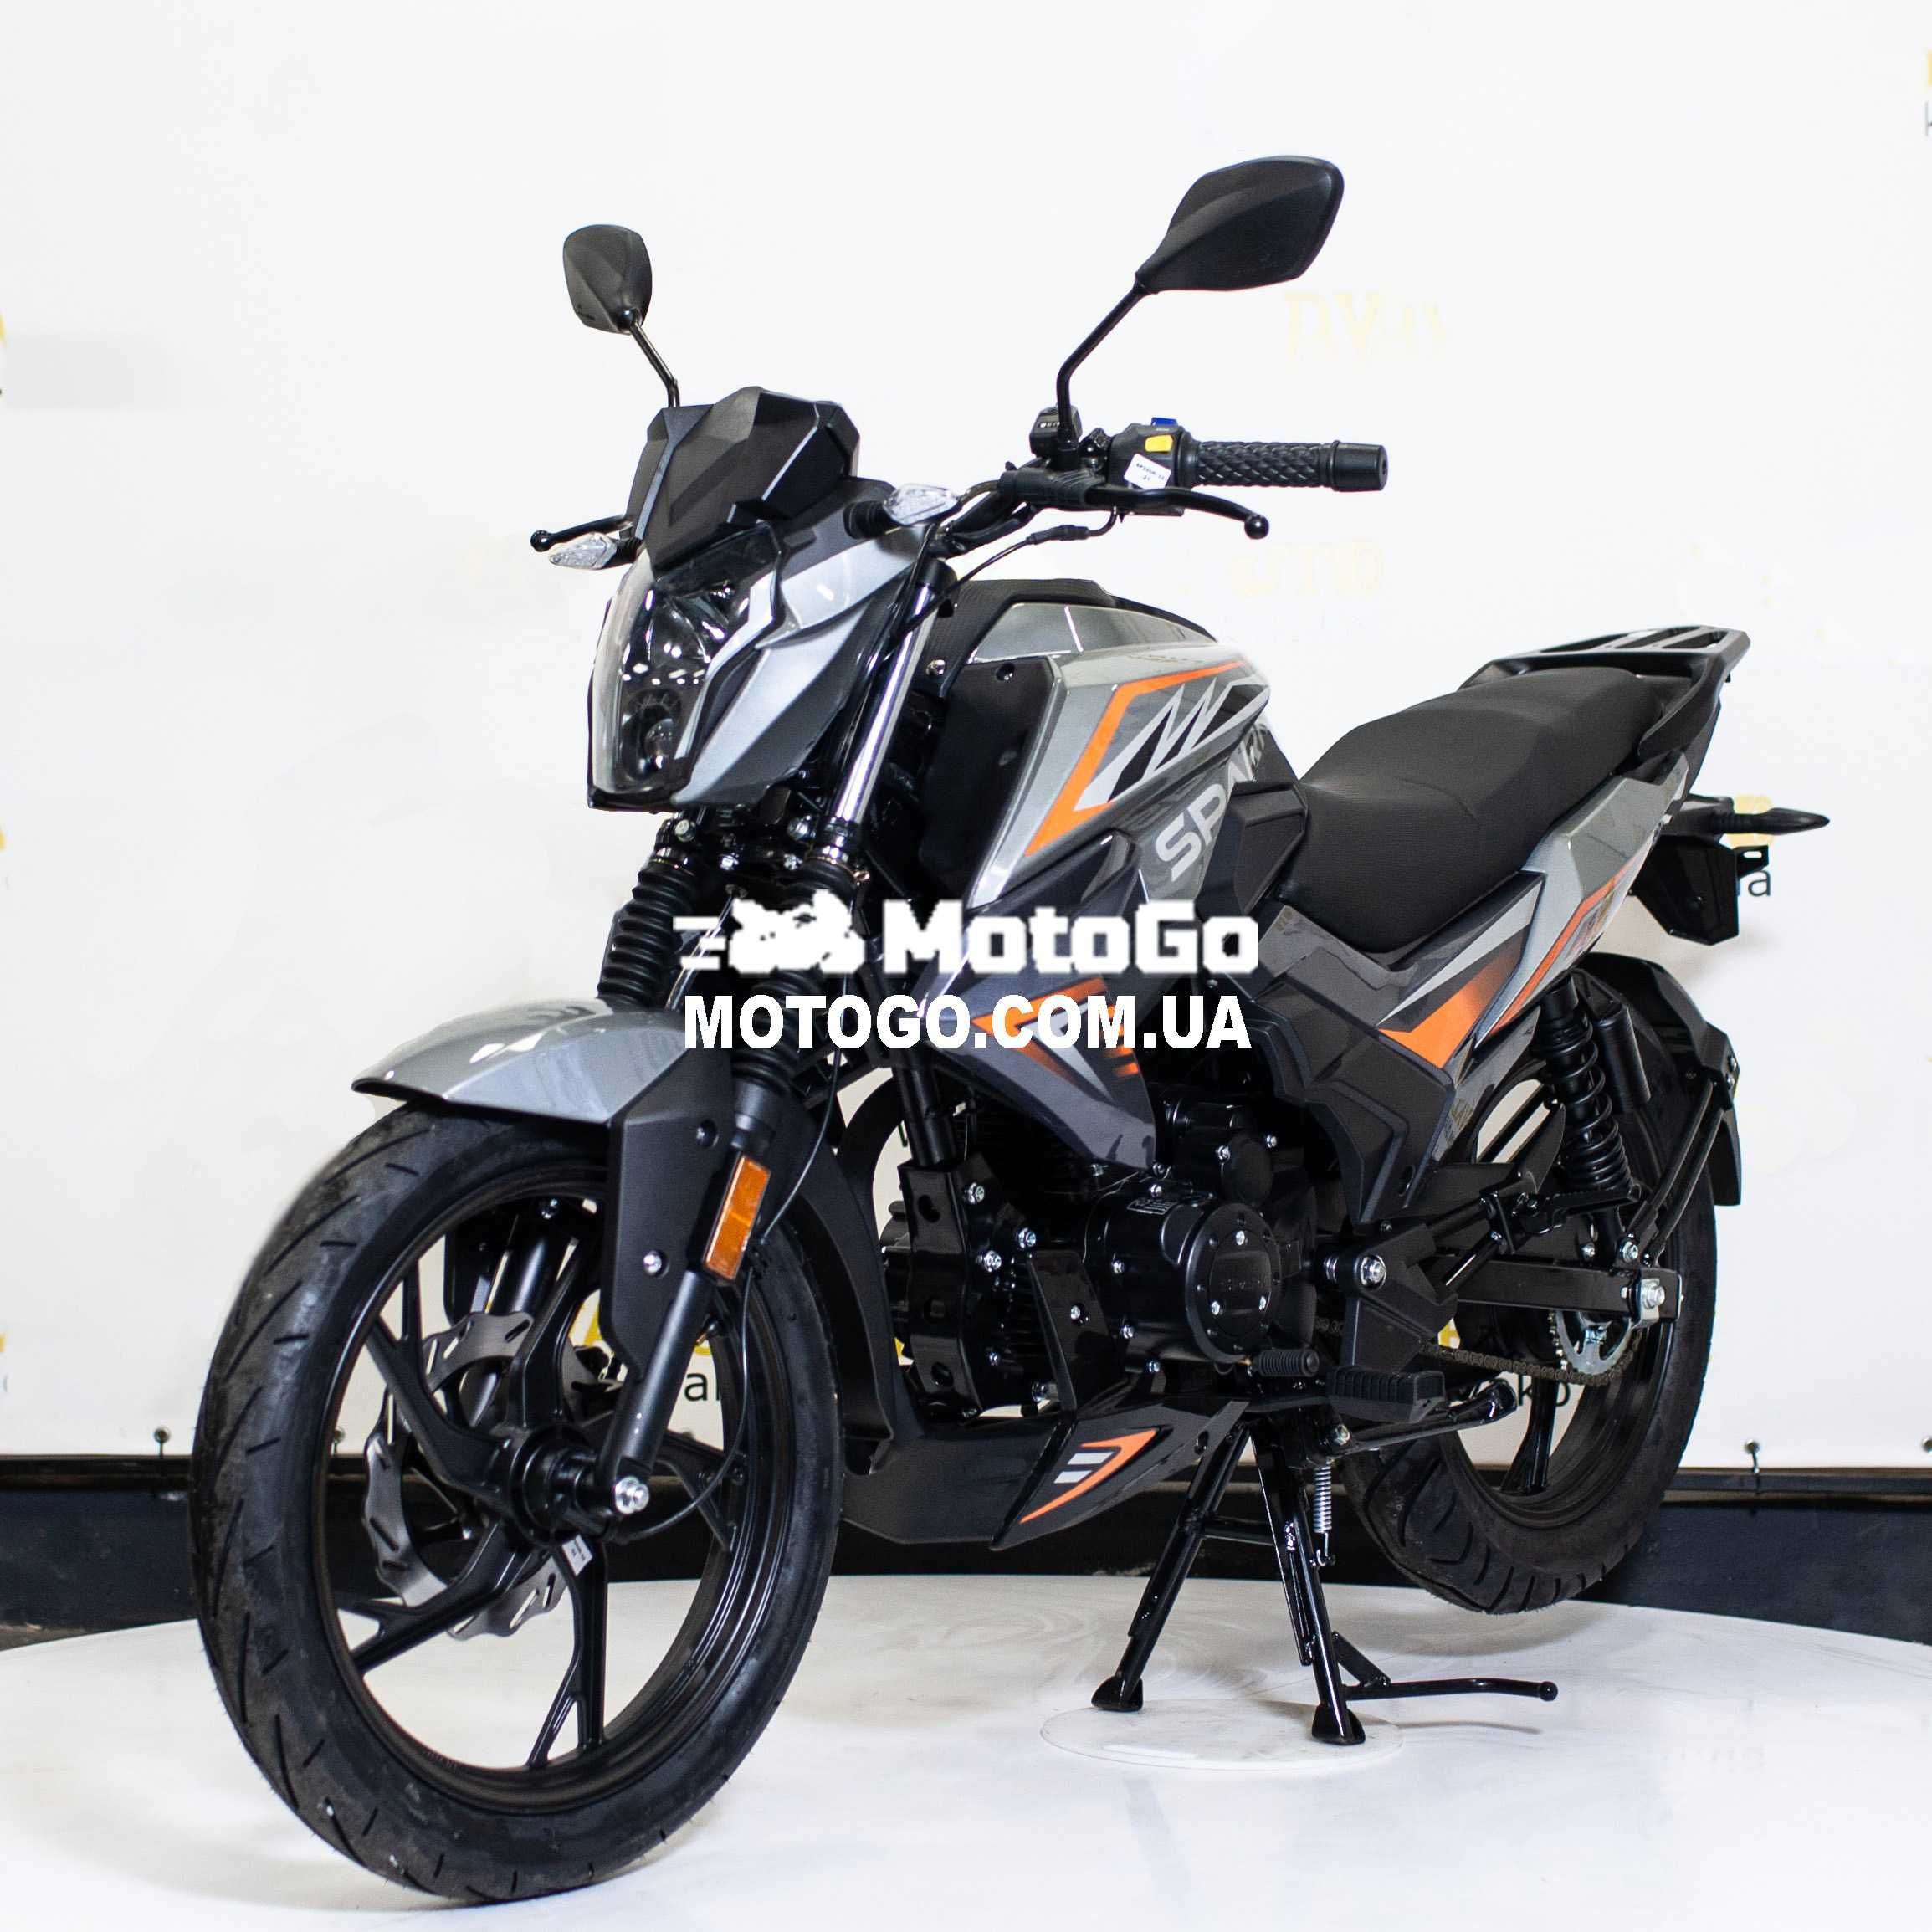 Новый Мотоцикл Spark SP200R-32. Гарантия, Кредит - Мотосалон MotoGo!!